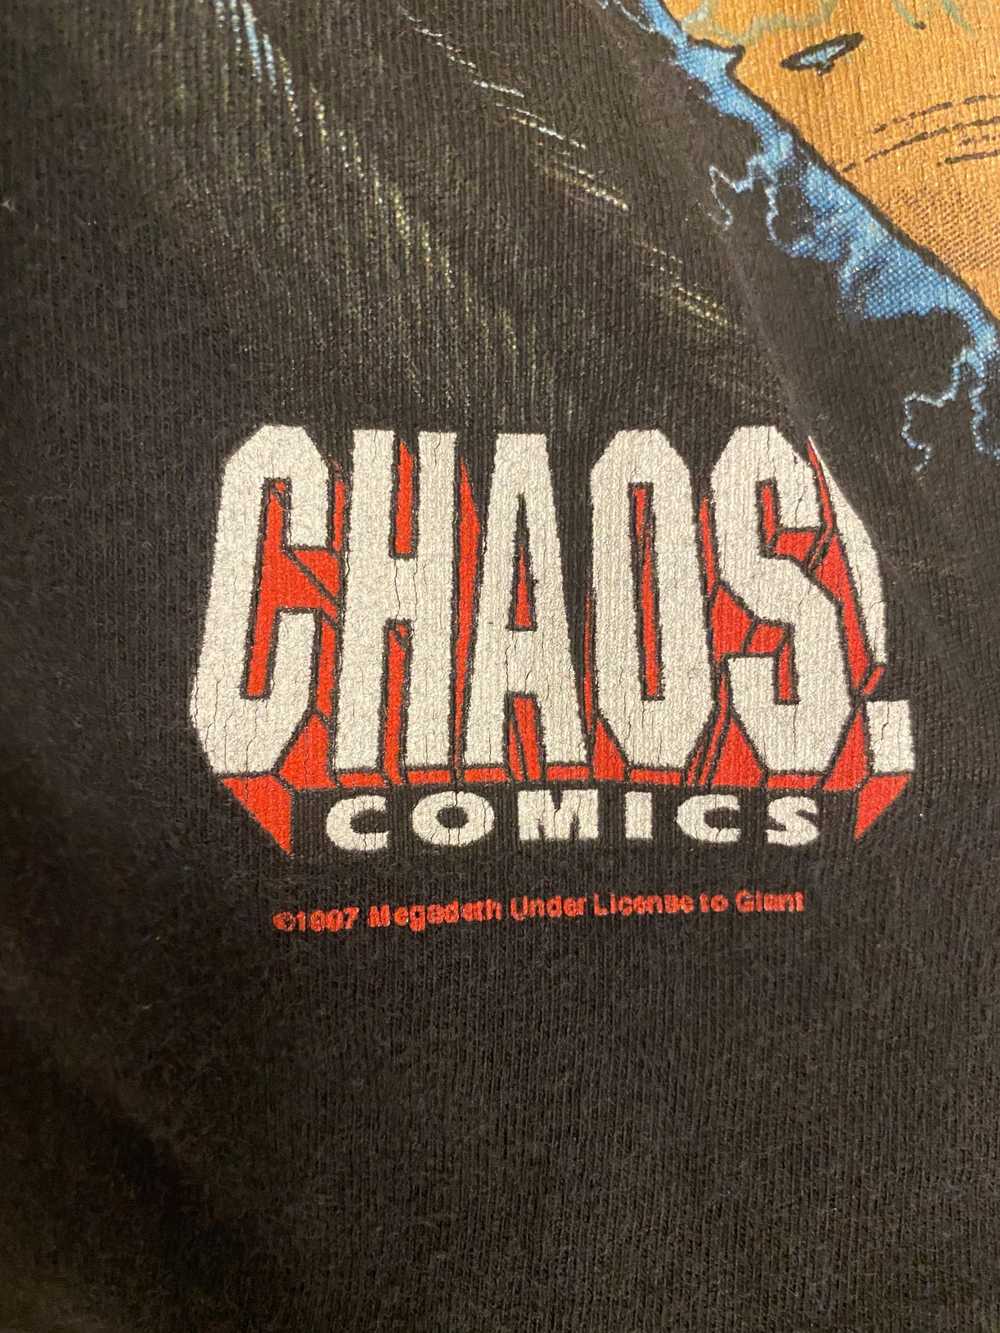 1997 Chaos Comics x Megadeth Band tee - image 4